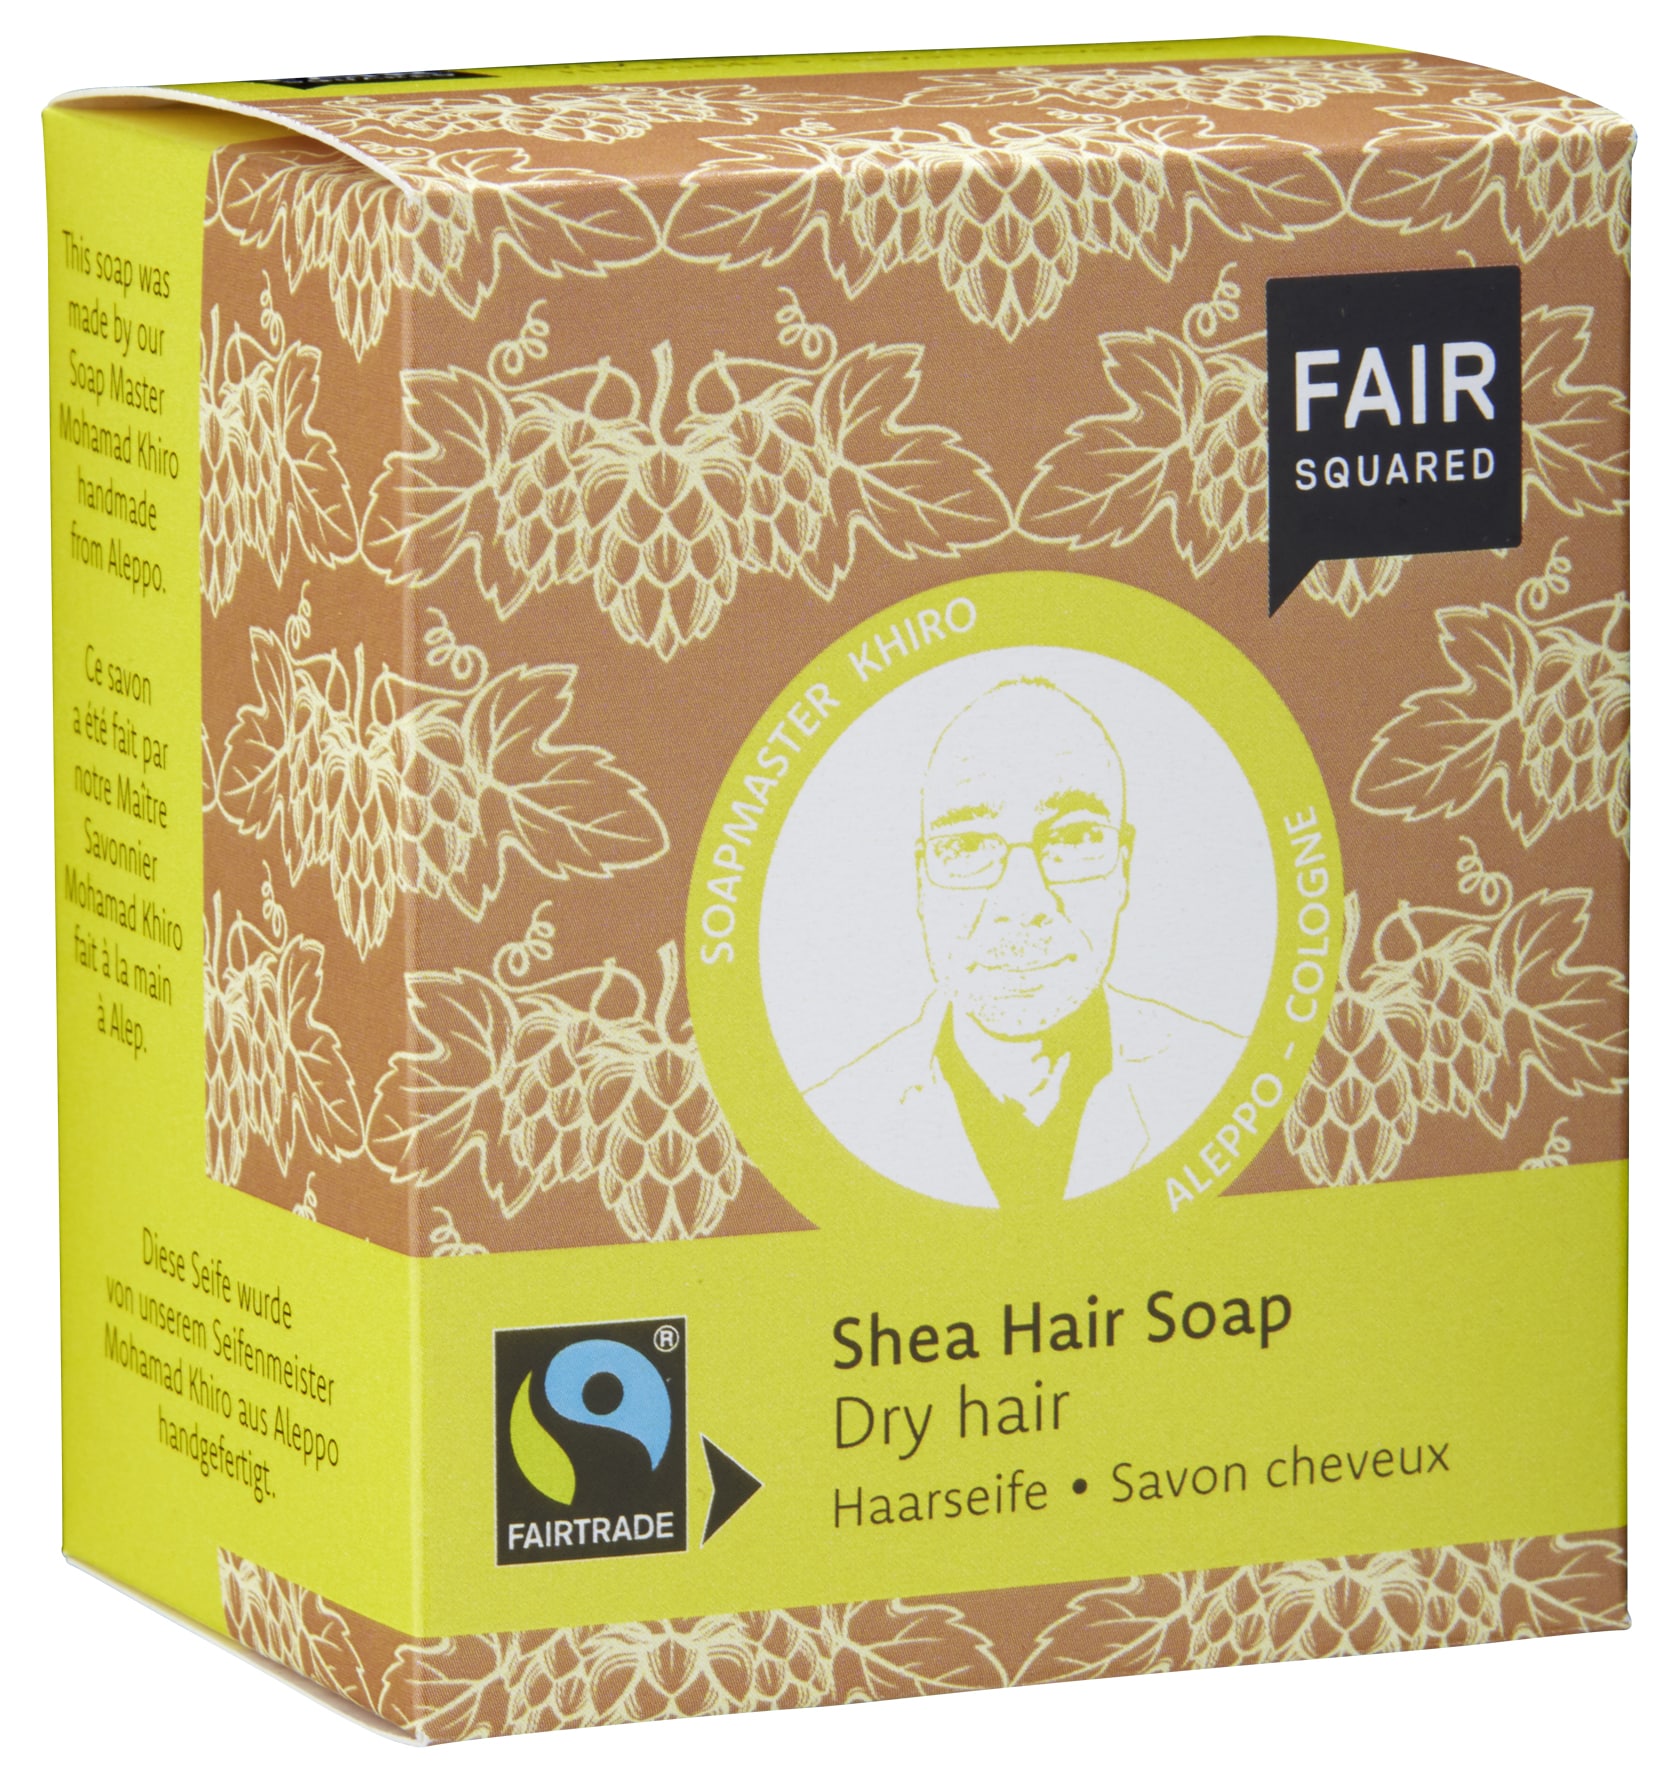 Shea Hair Soap Dry Hair